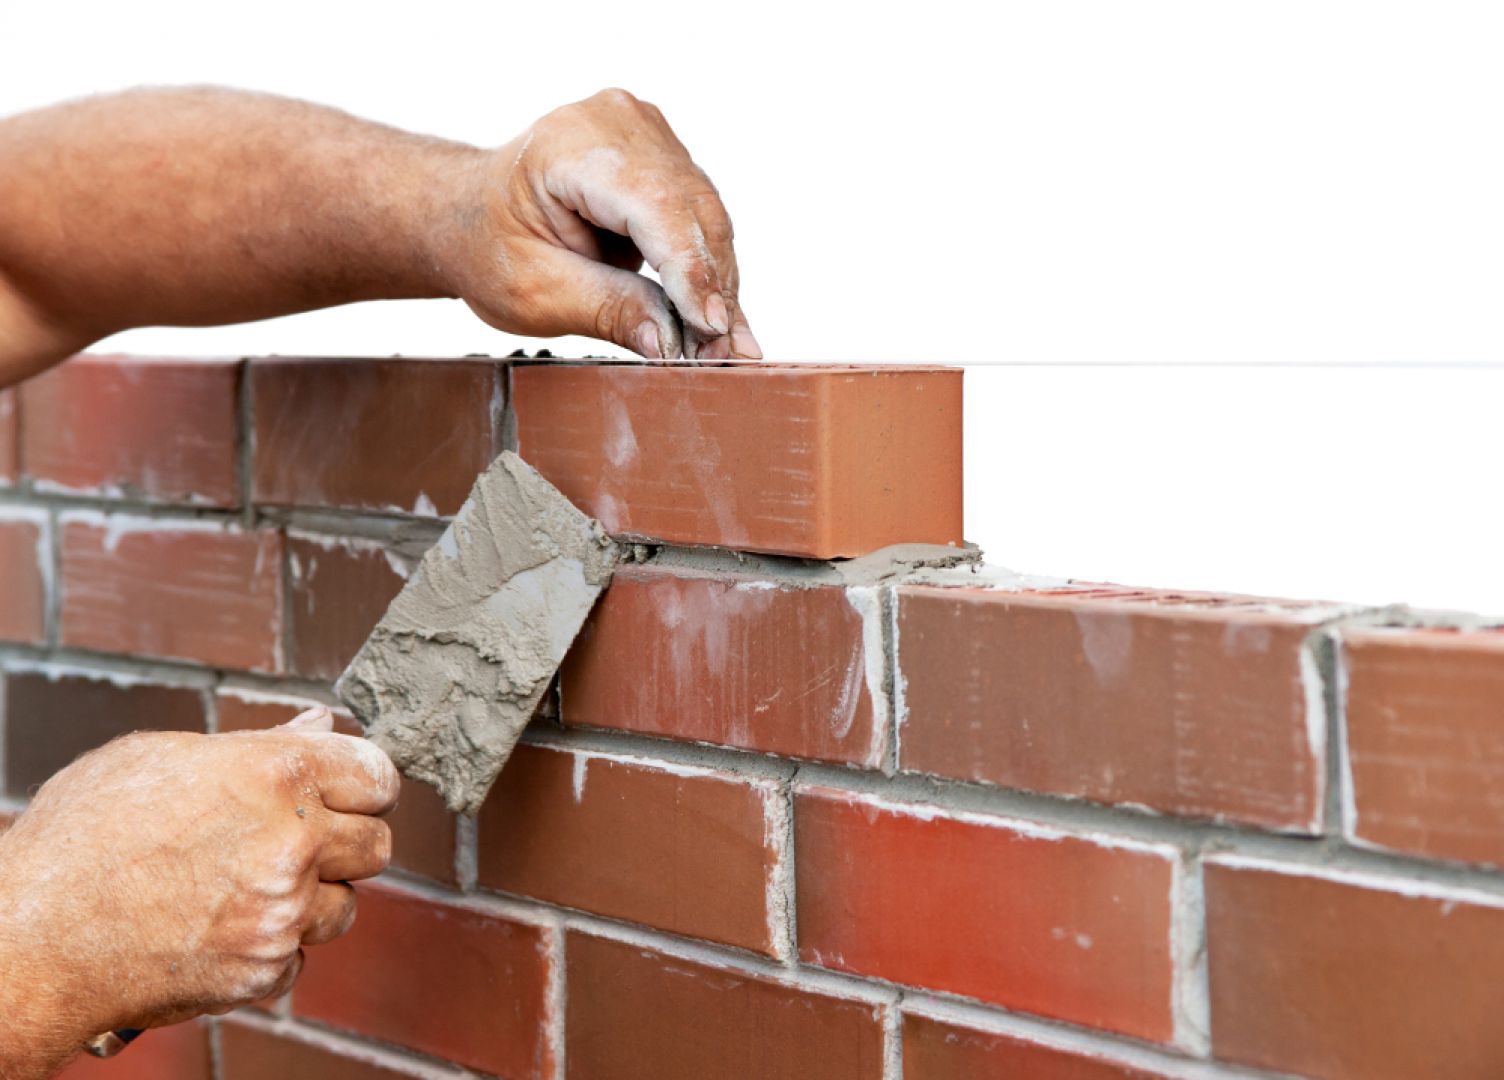 Z Raportu wynika także, że Polacy najczęściej decydują się na domy murowane – cegłą ceramiczną (41%). Fot. Shutterstock